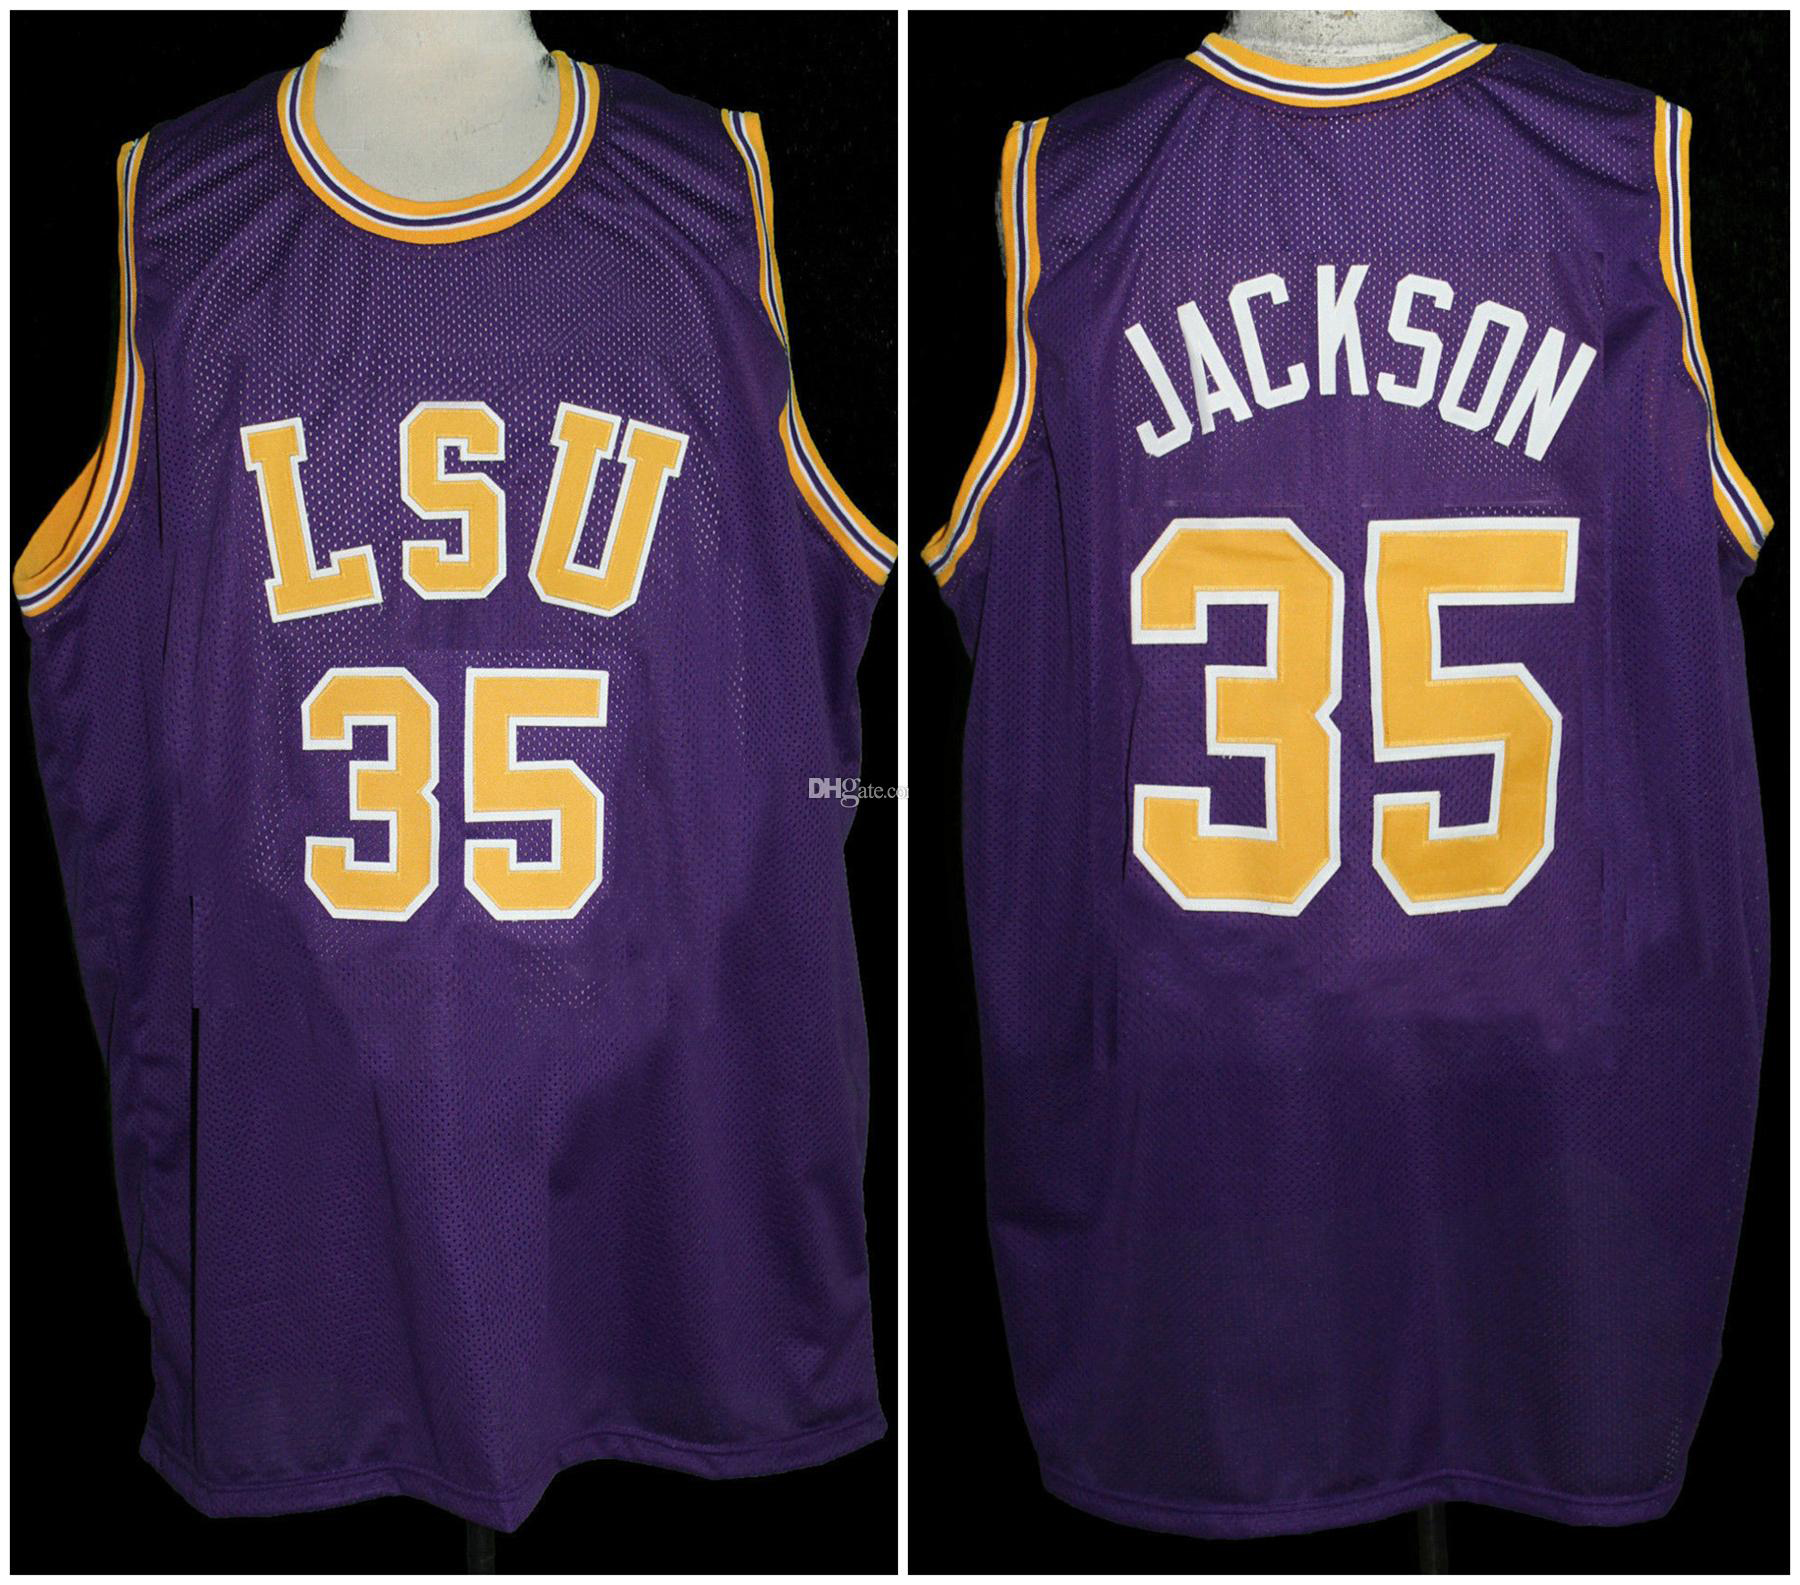 Chris Jackson # 35 LSU Tigers College Retro Baloncesto Jersey Hombre Cosido Personalizado Cualquier Número Nombre Jerseys